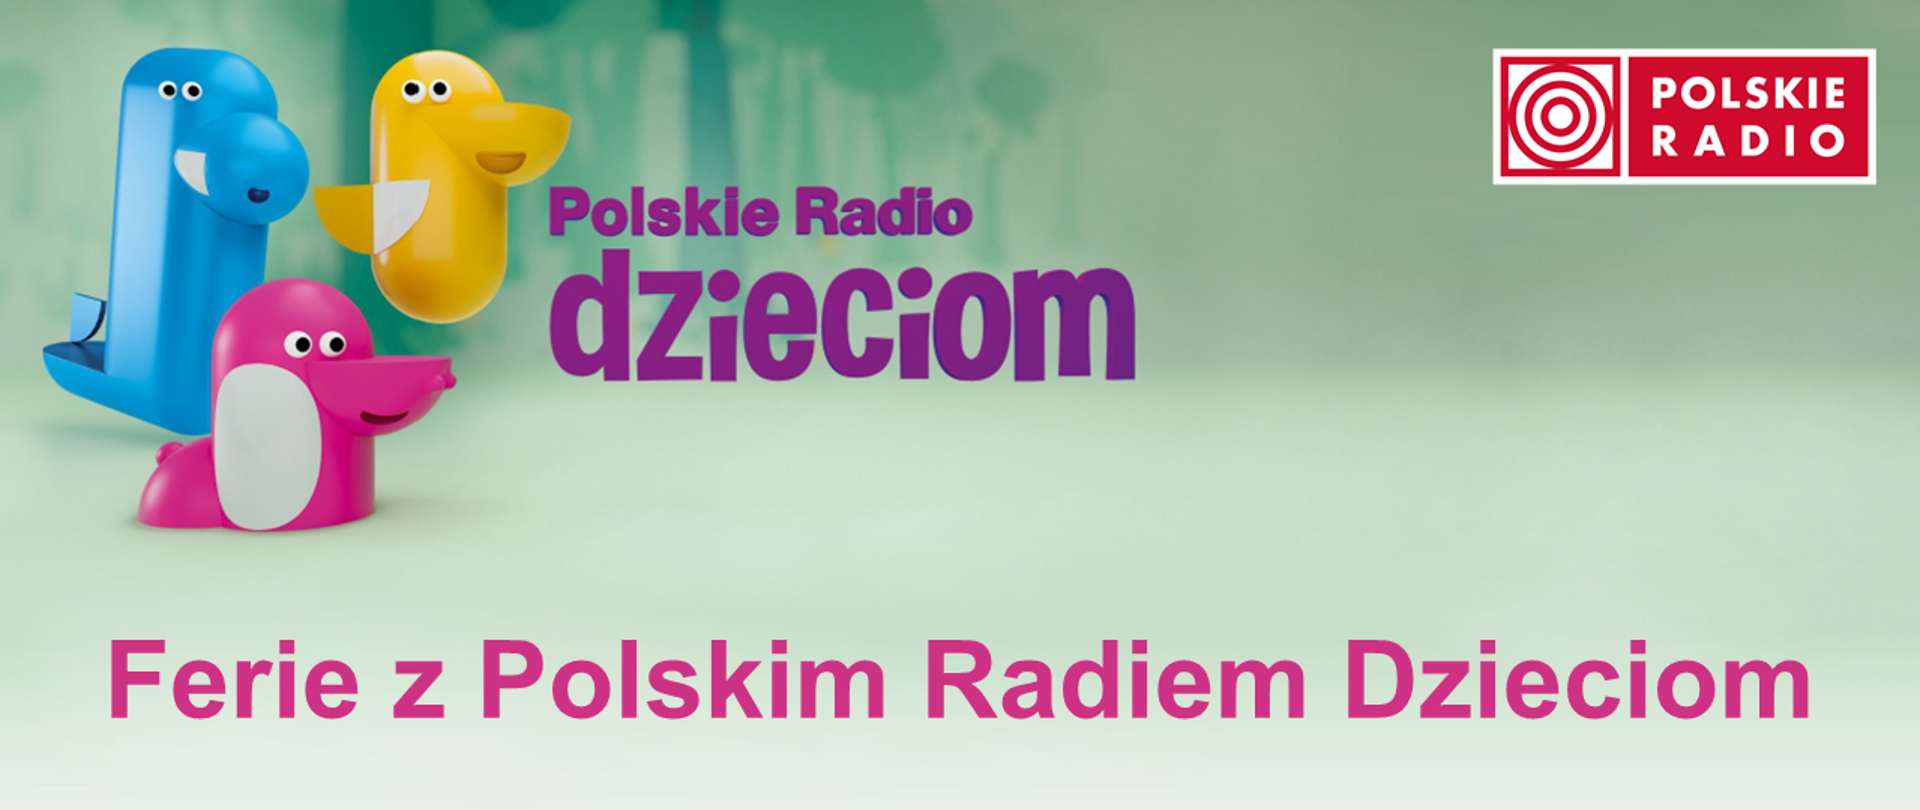 Plansza przedstawia napis ferie z polskim radiem dzieciom i u góry napis Polskie radio dzieciom, w prawym górnym rogu napis biały na czerwonym tle polskie radio. W lewym górnym rogu różowa, niebieska i żółta figurki przypominające zwierzątka. 